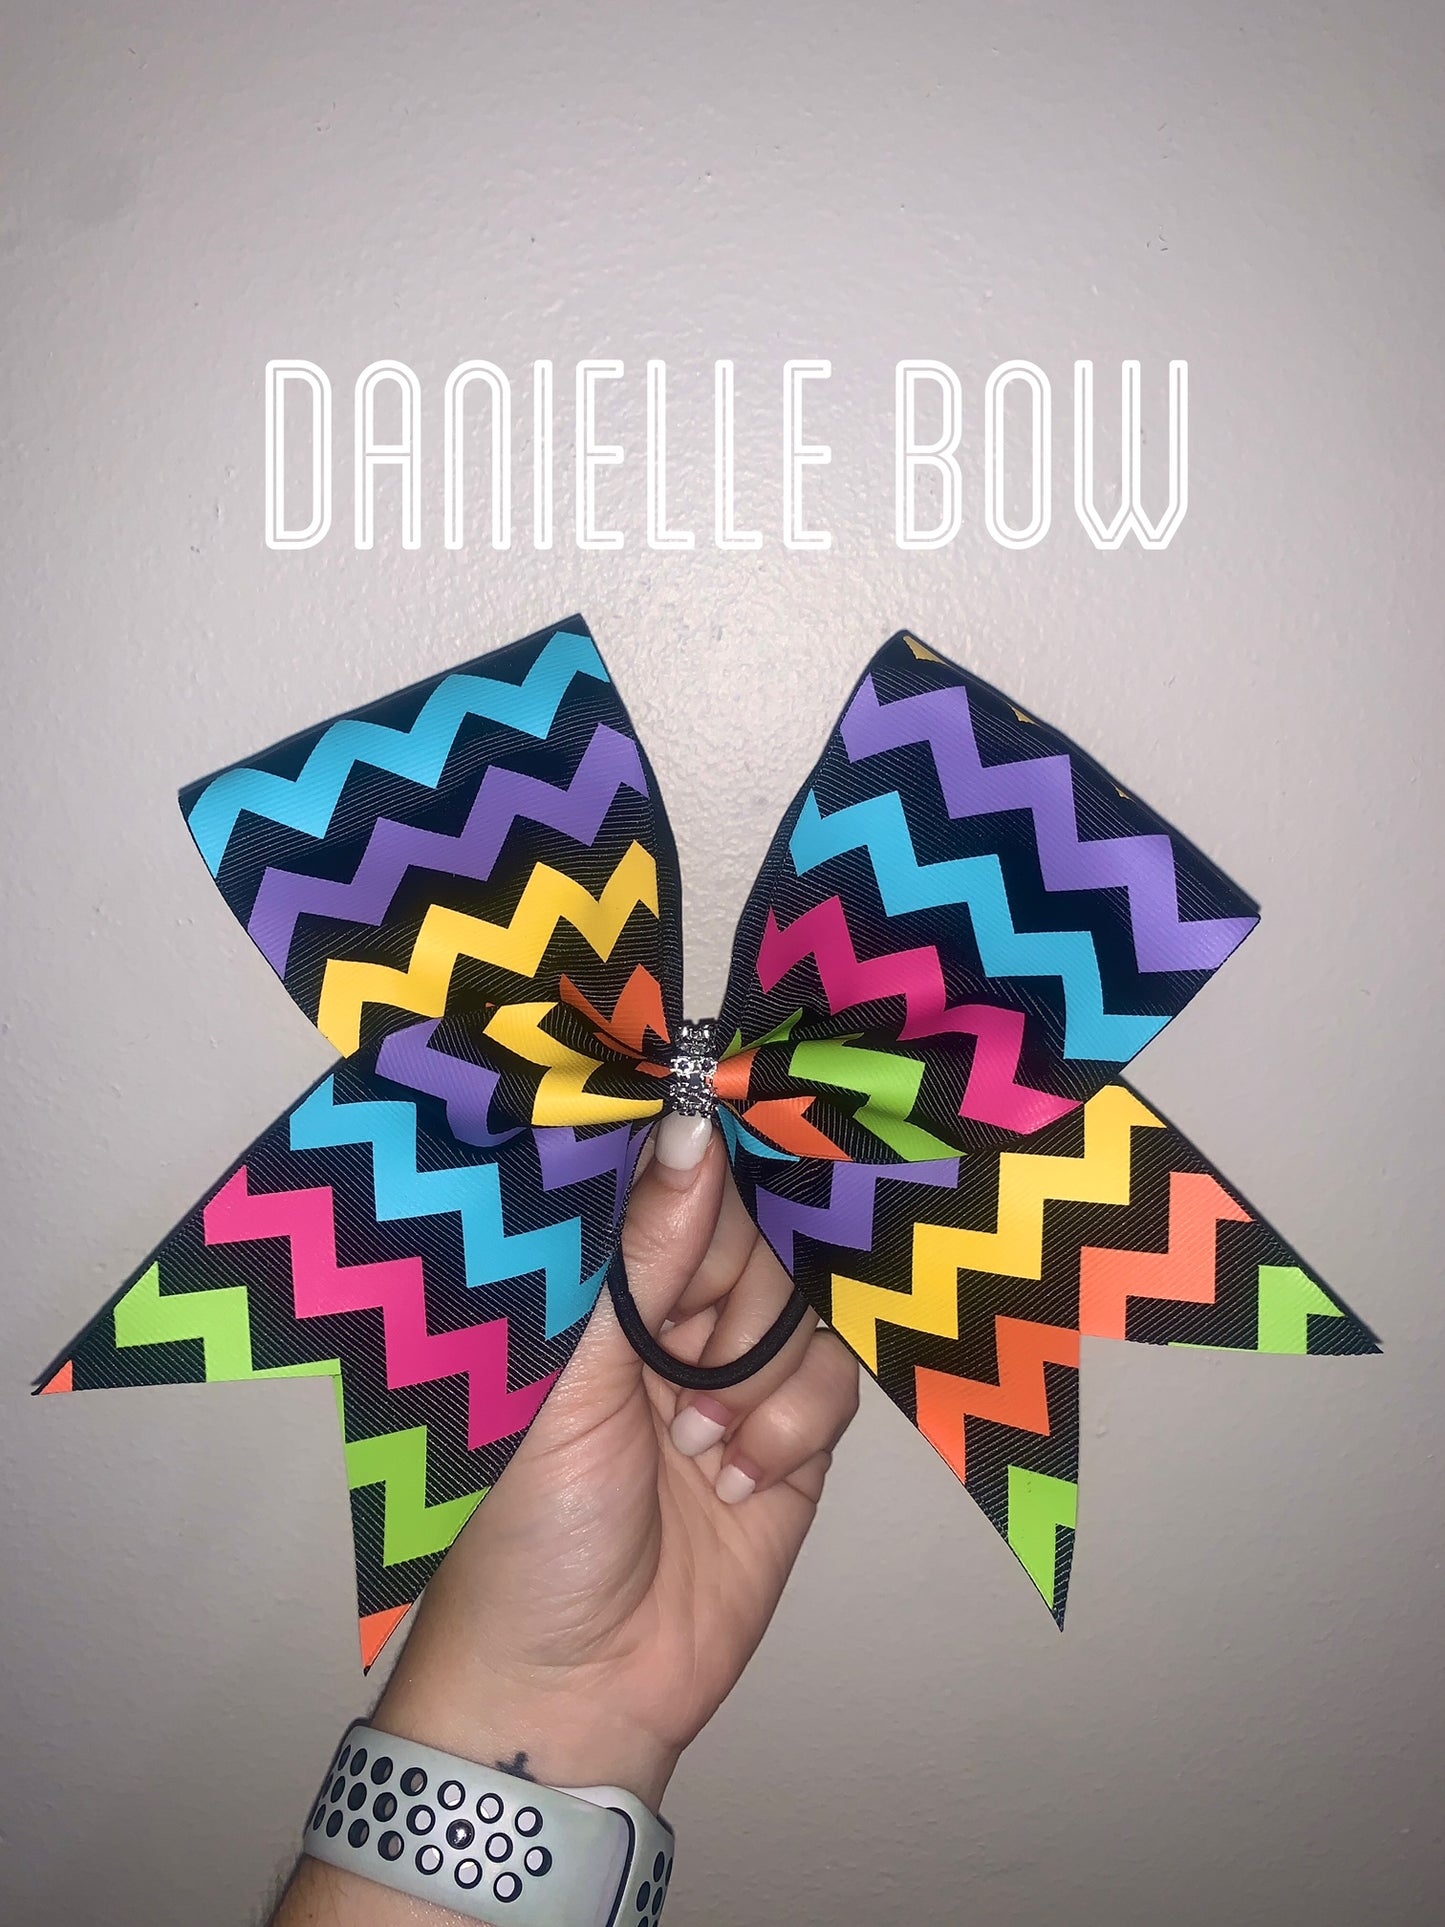 Danielle Bow